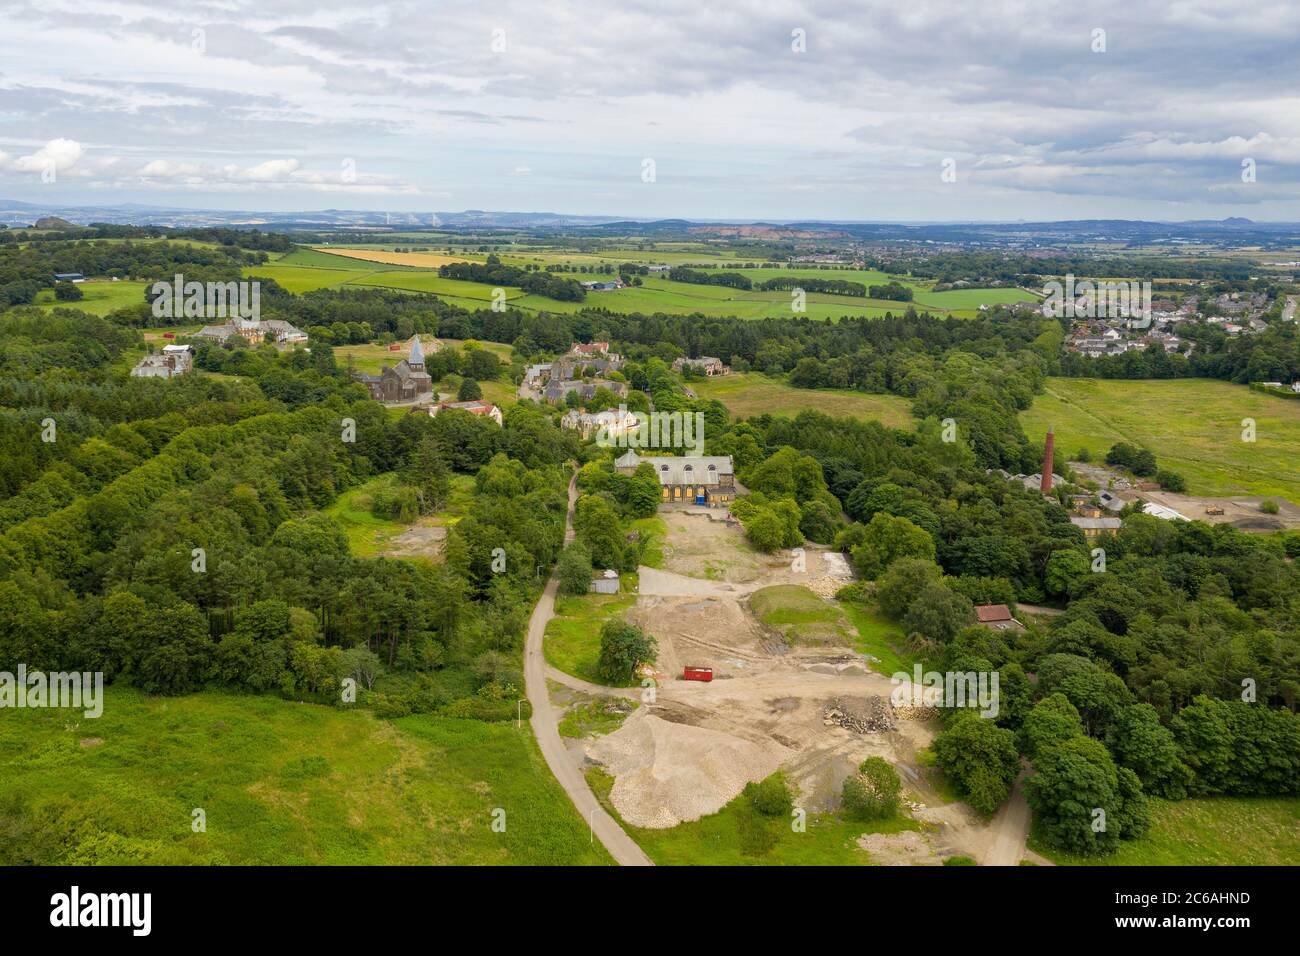 Luftaufnahme von Bangour Village, ehemaliges Psychiatric Hospital, West Lothian, Schottland. Das Gelände wird derzeit für die Wohnanlage umentwickelt. Stockfoto